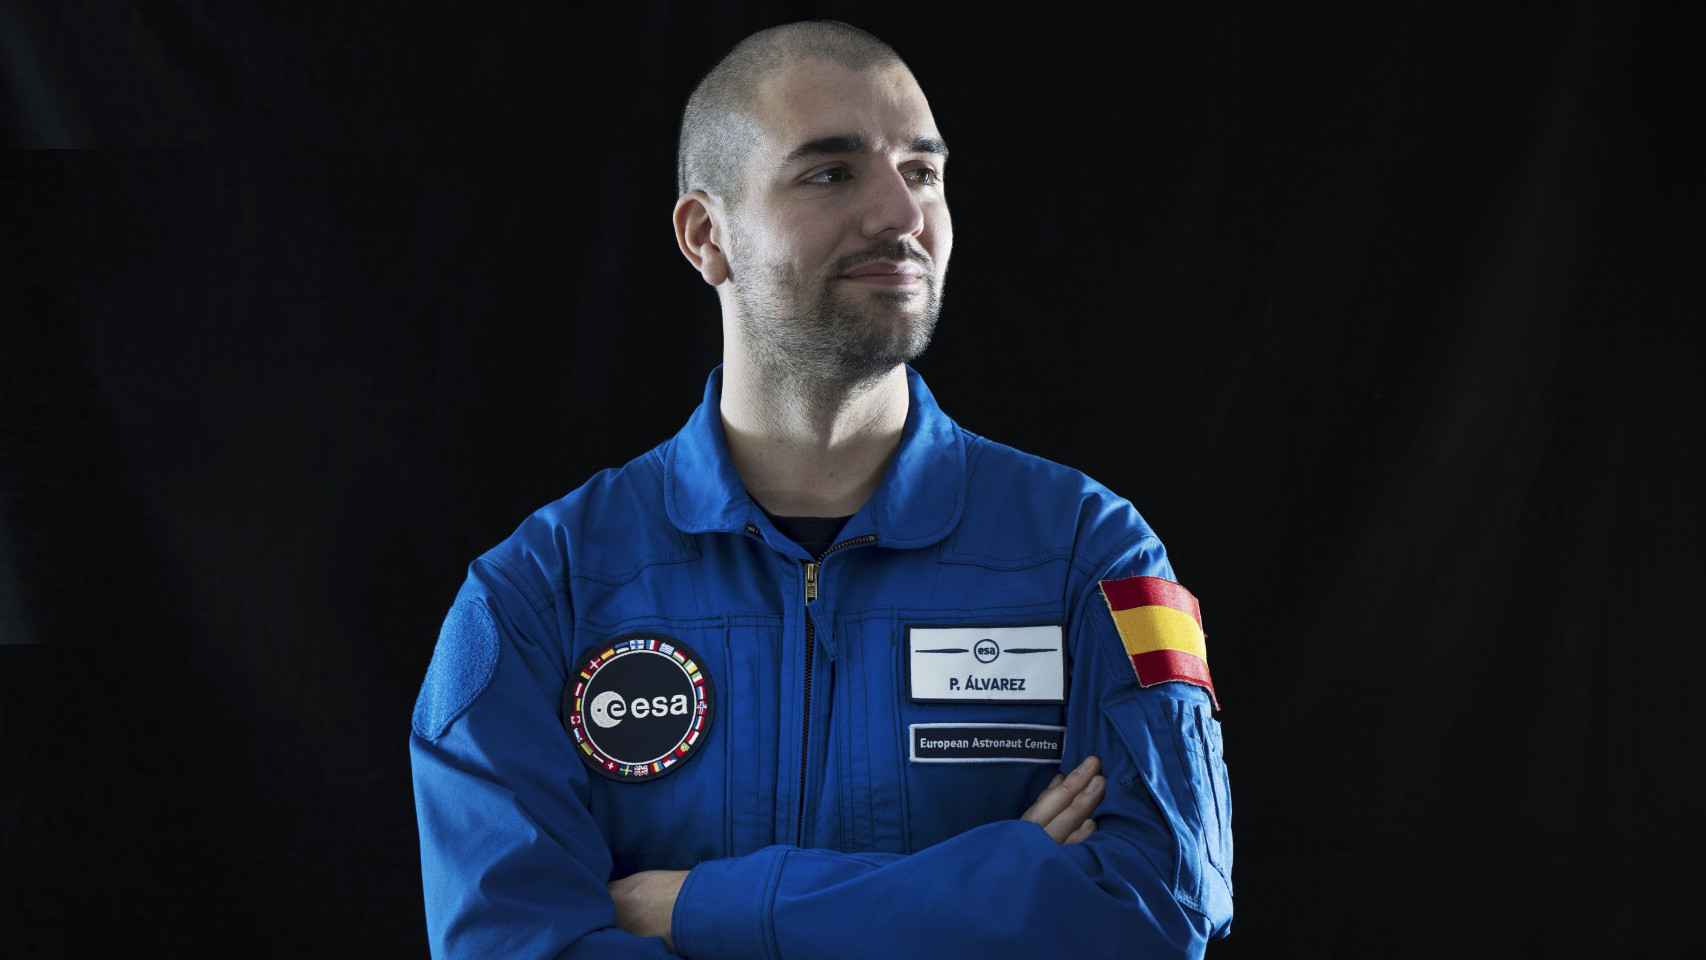 El astronauta español Pablo Álvarez